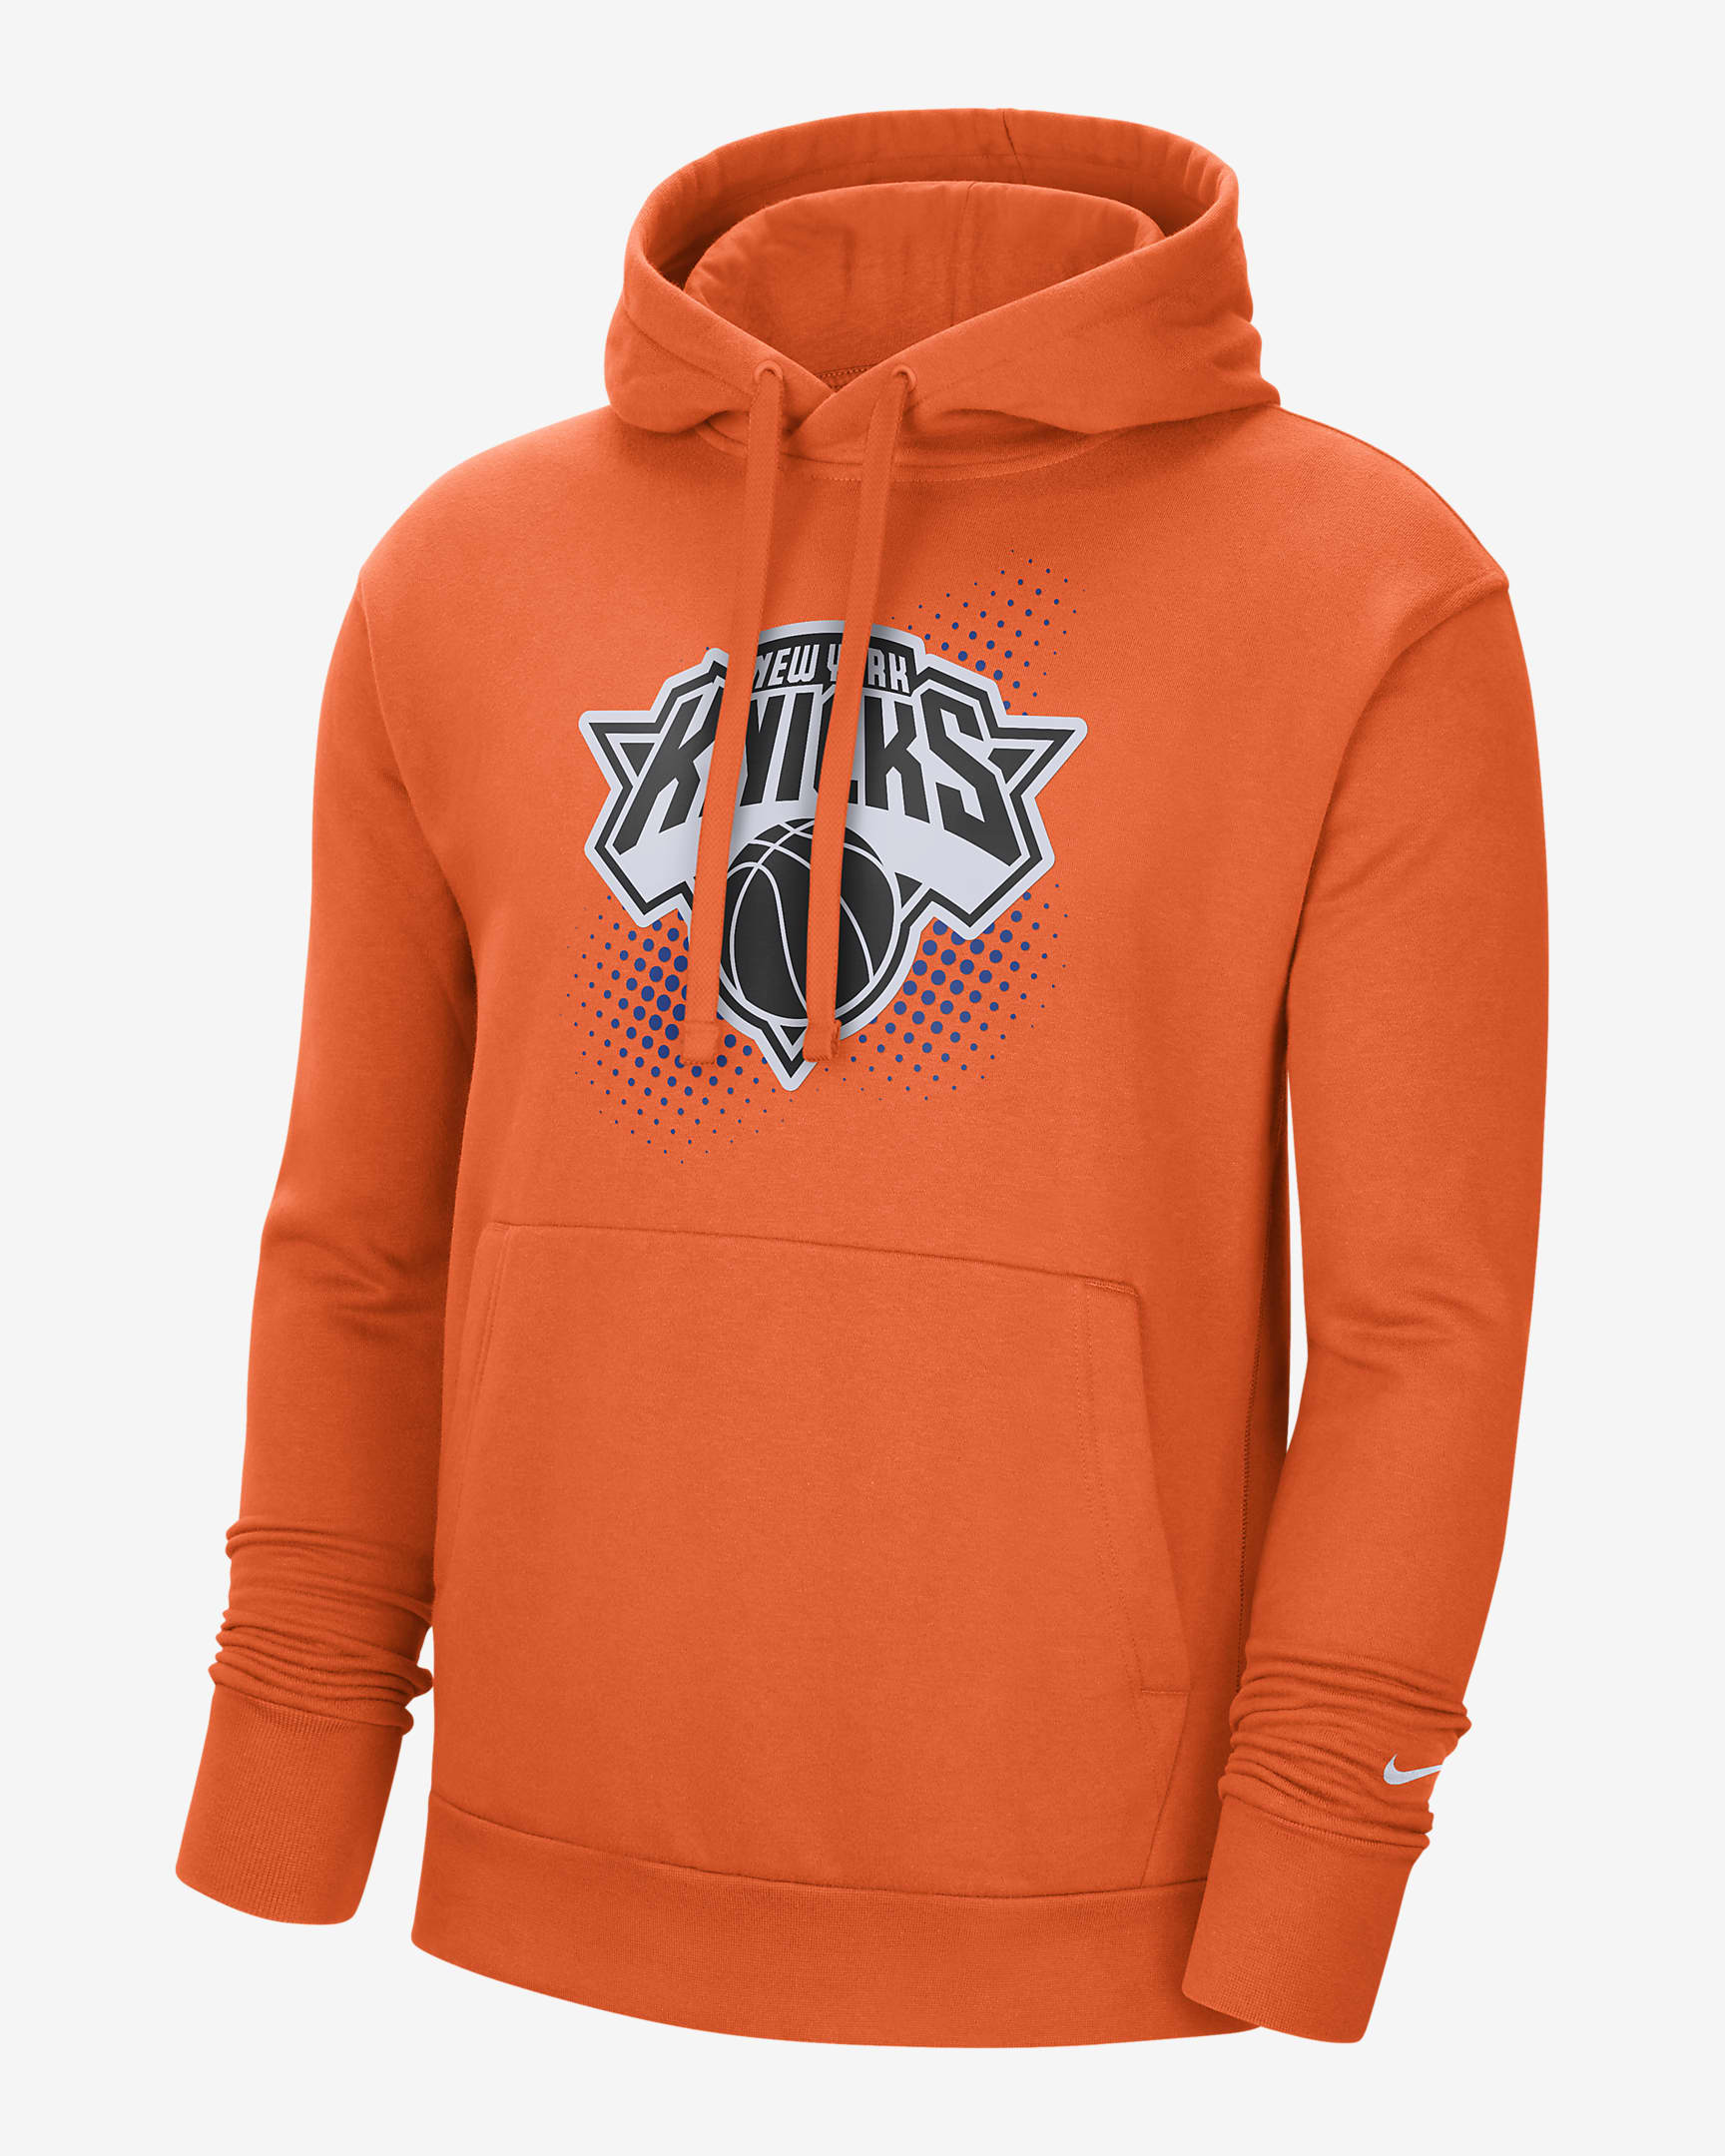 New Knicks Men's NBA Fleece Pullover Hoodie 21 Exclusive Brand LLC.